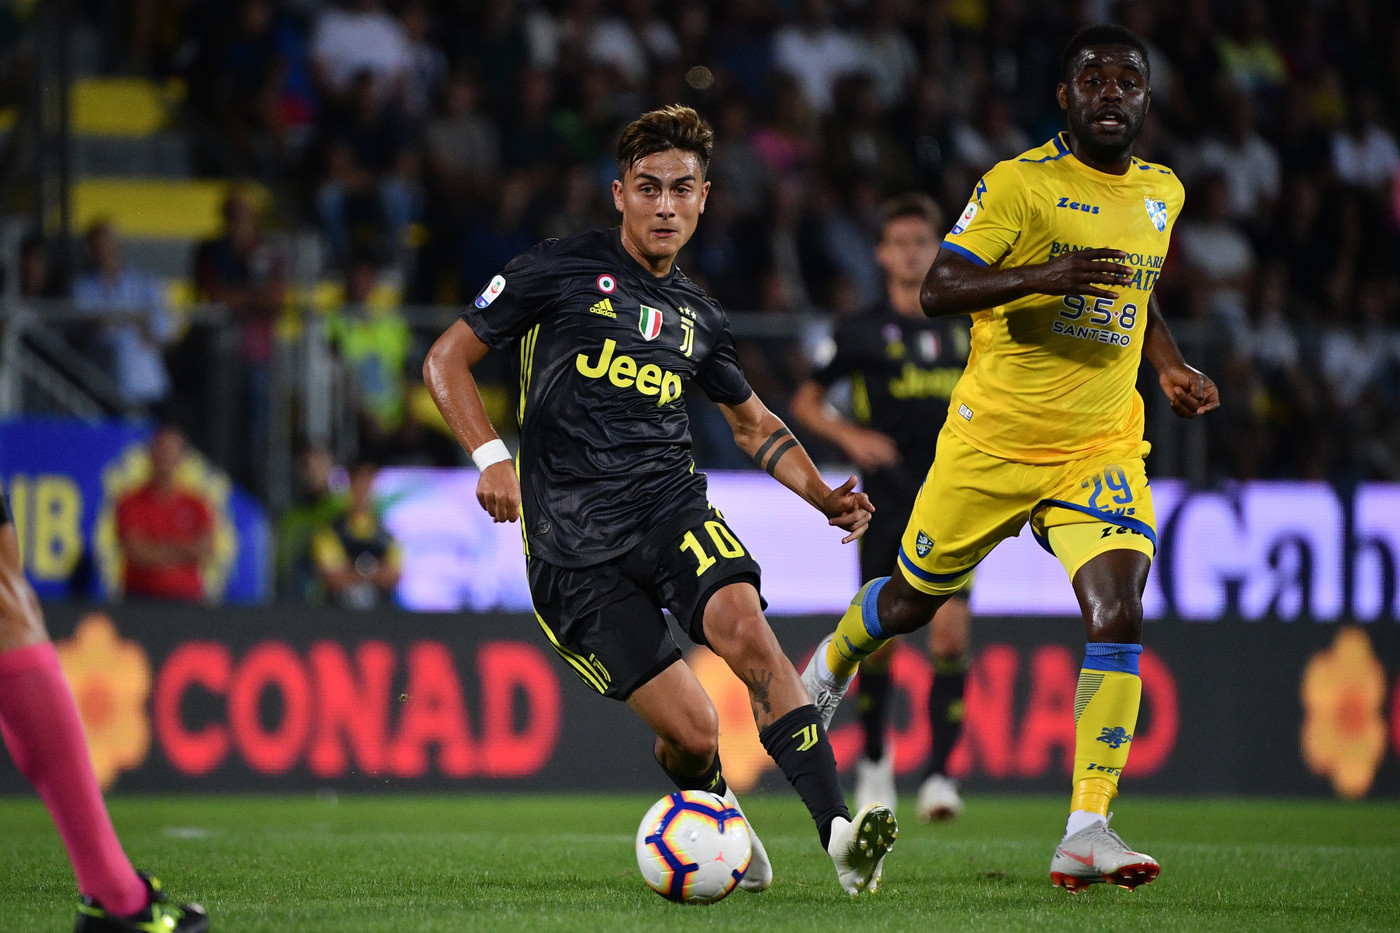 Serie A, Frosinone-Juventus 0-2 | Il Fotoracconto